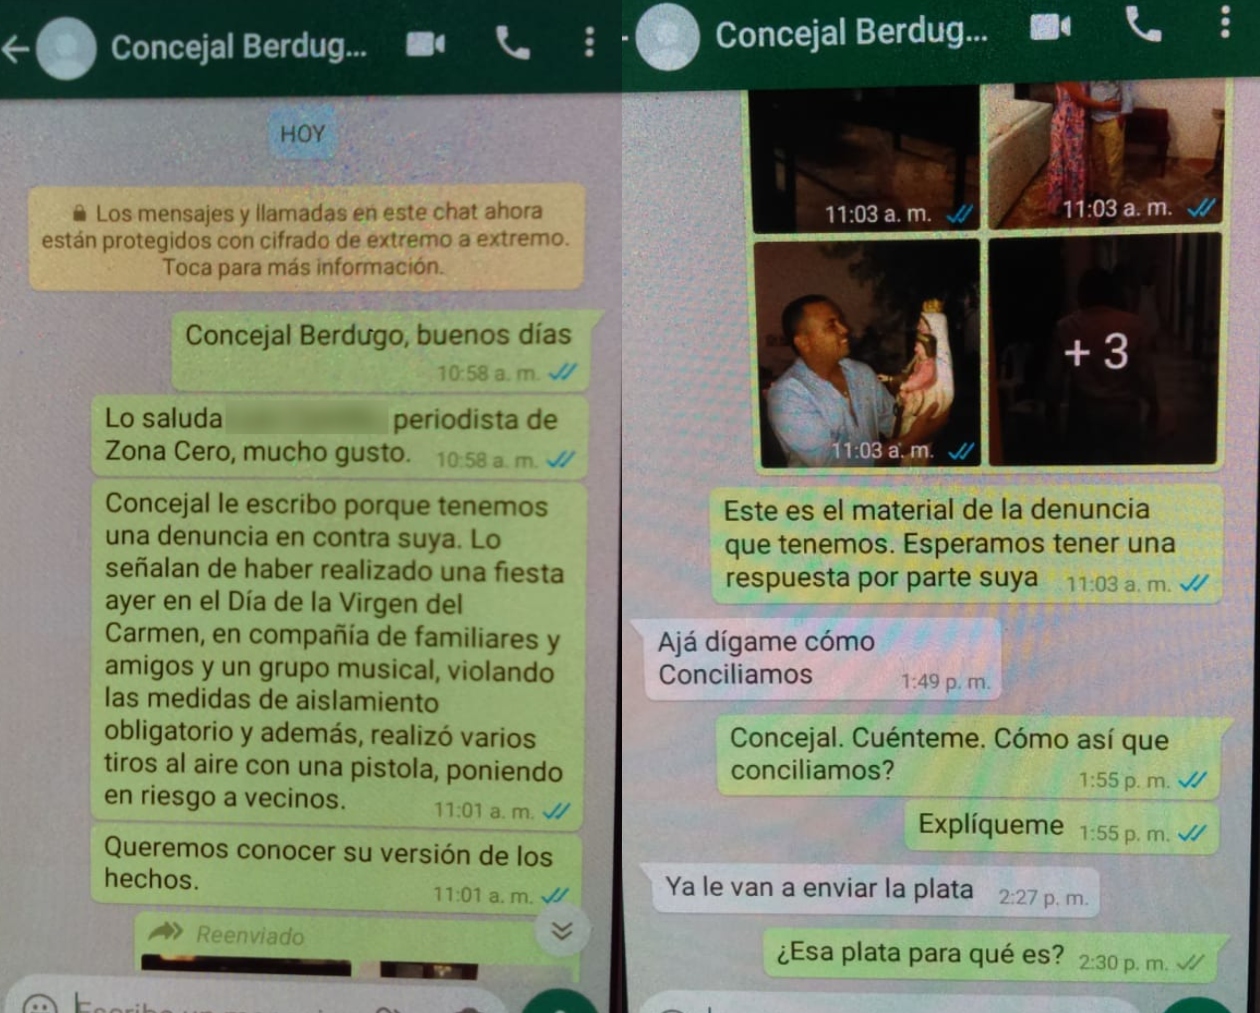 La conversación por Whatsapp que sostuvo Zona Cero con el Concejal Antonio Carlos Berdugo Ospino.